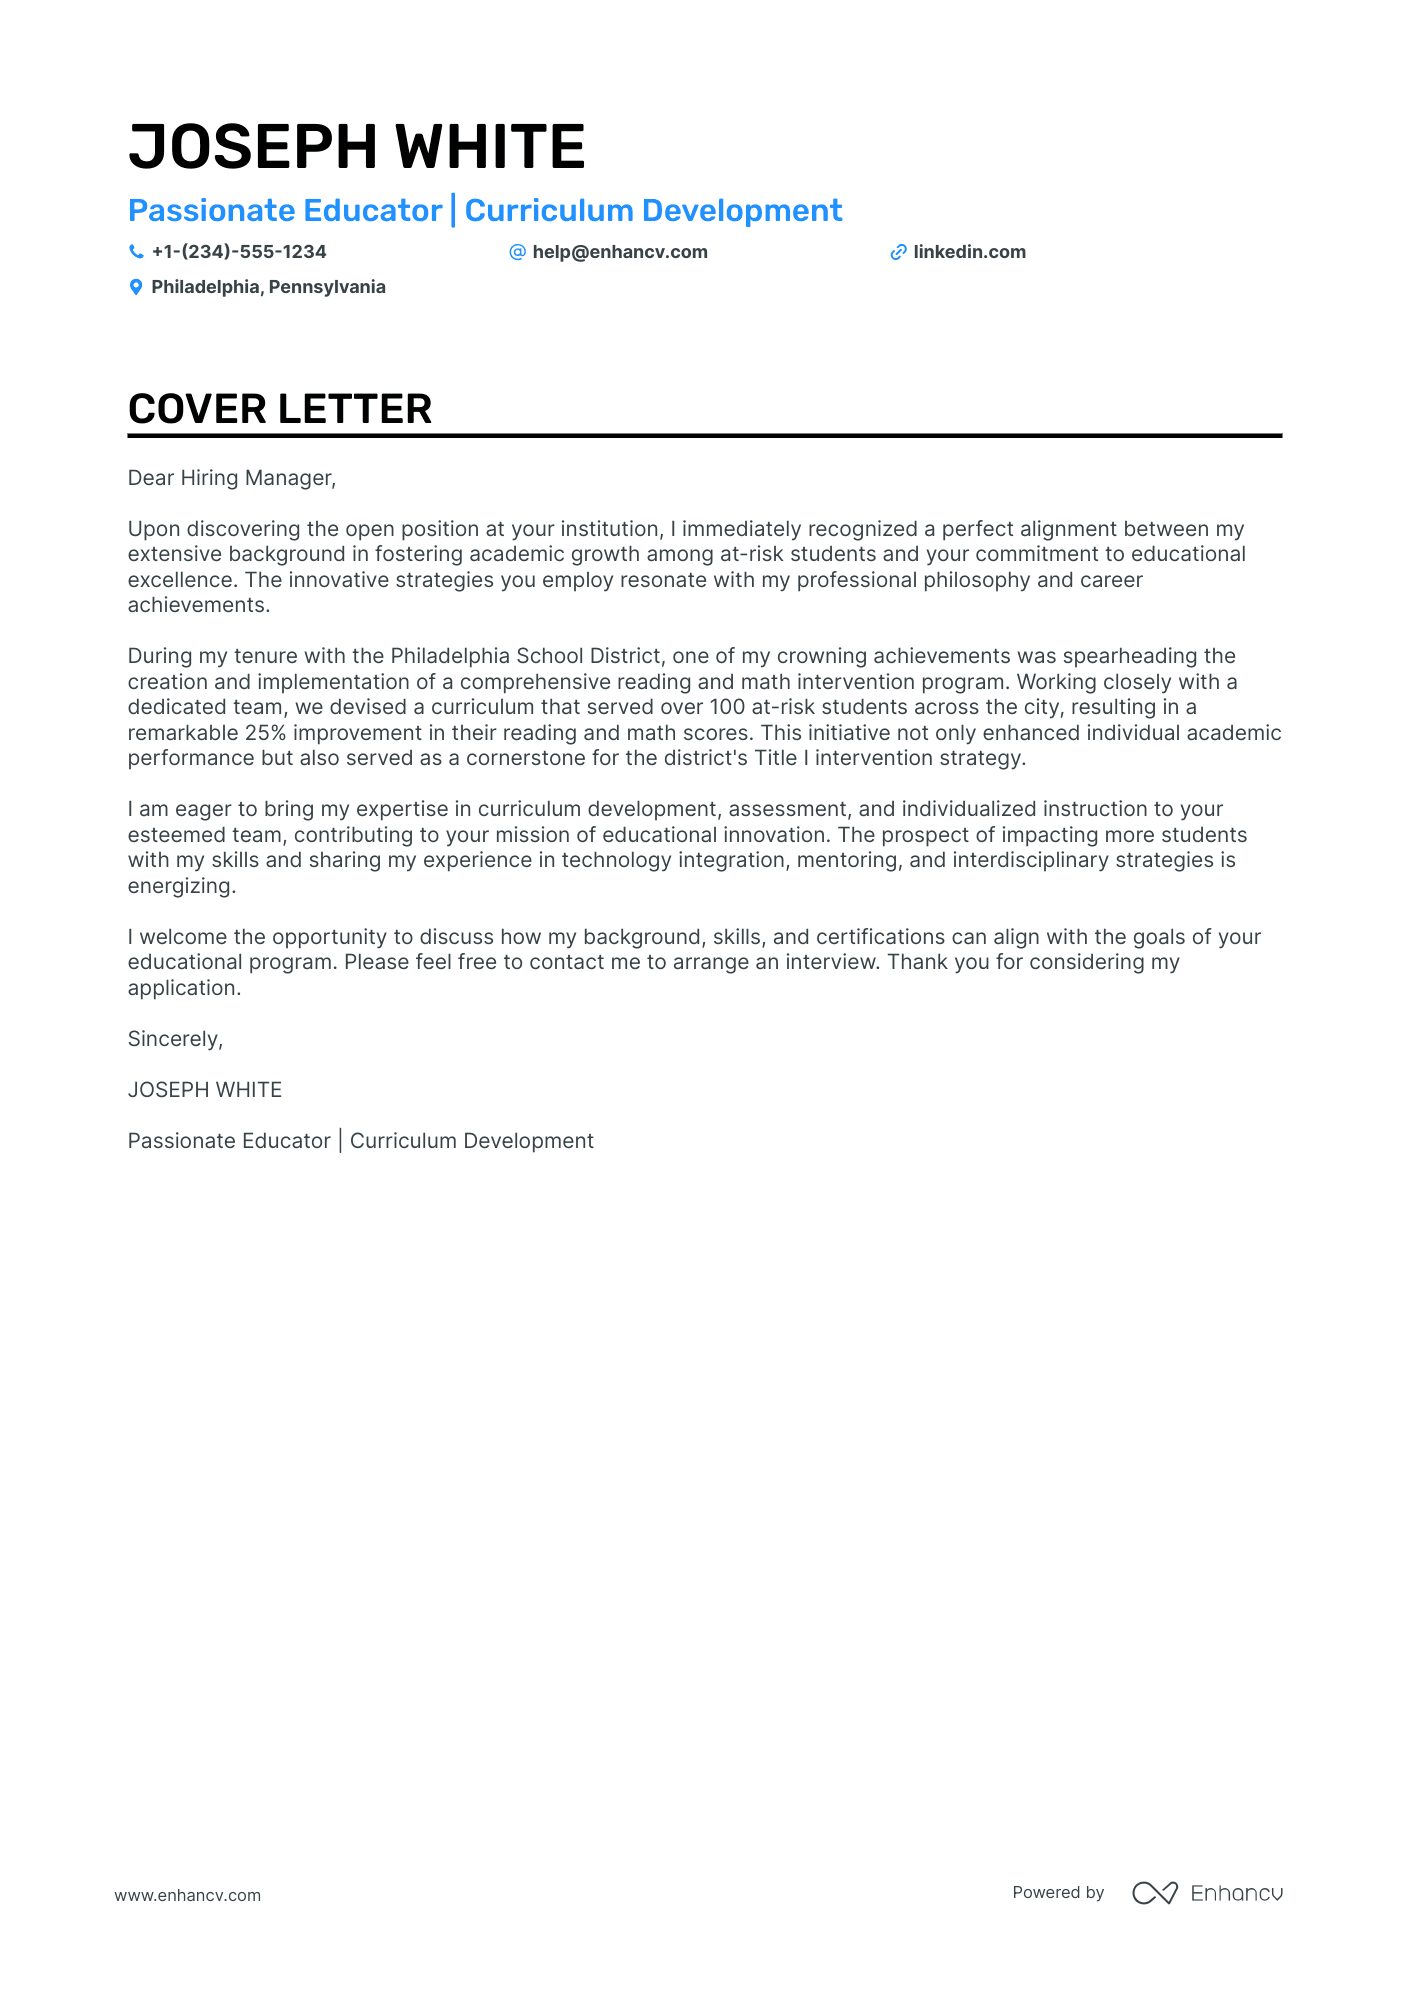 teacher cover letter samples elementary